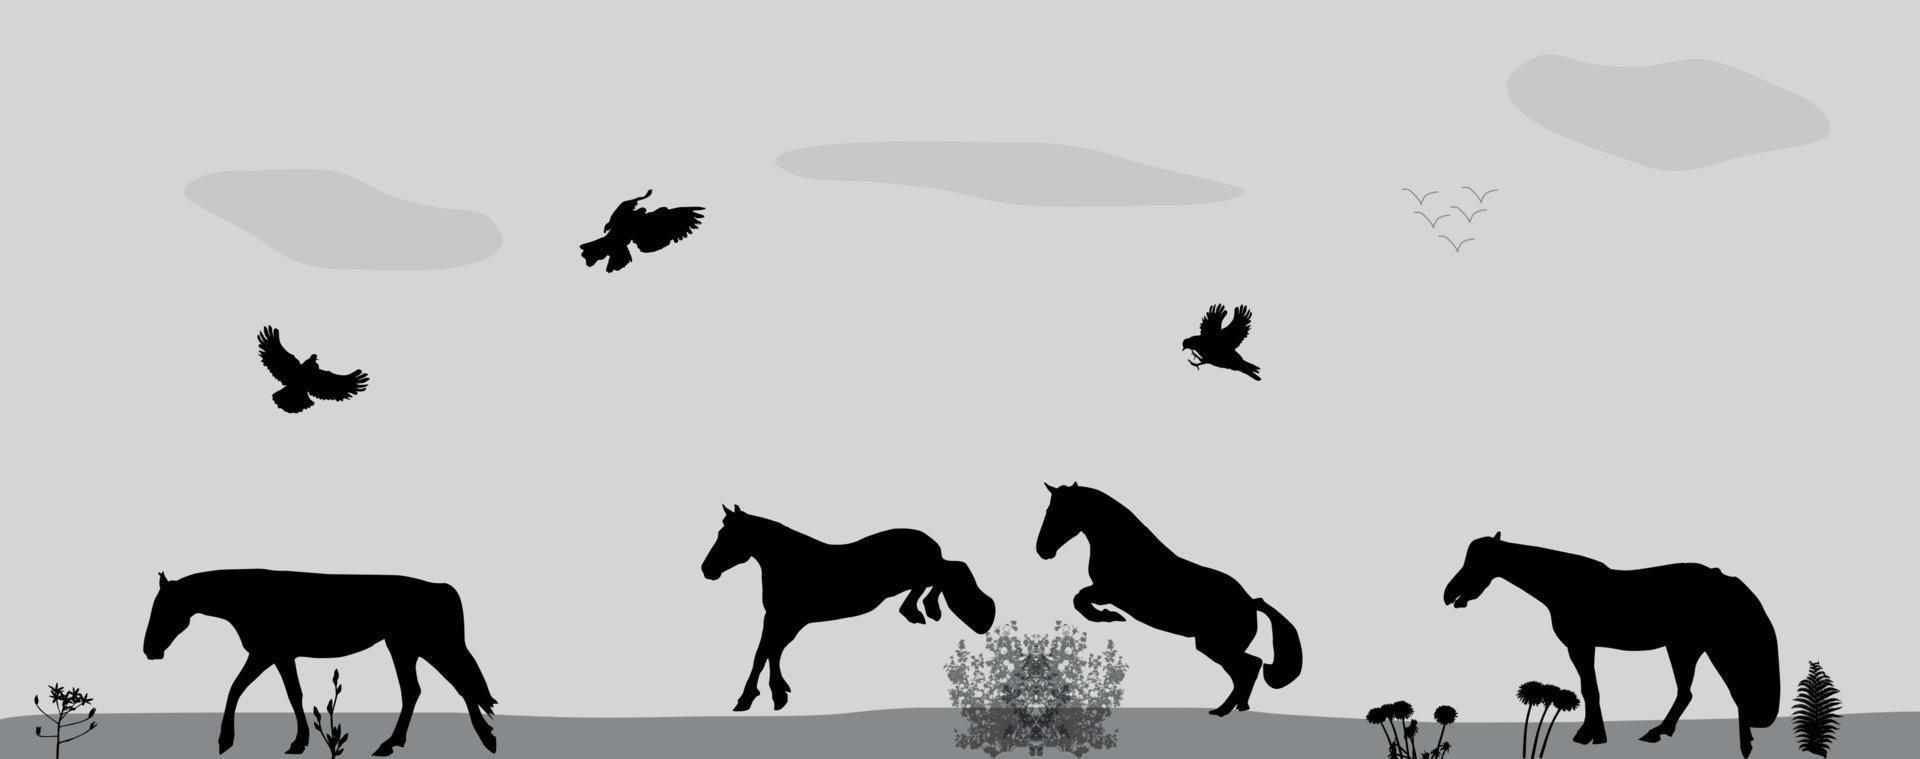 Pferde springen, Vögel fliegen in der Natur. Vektor-Illustration. vektor